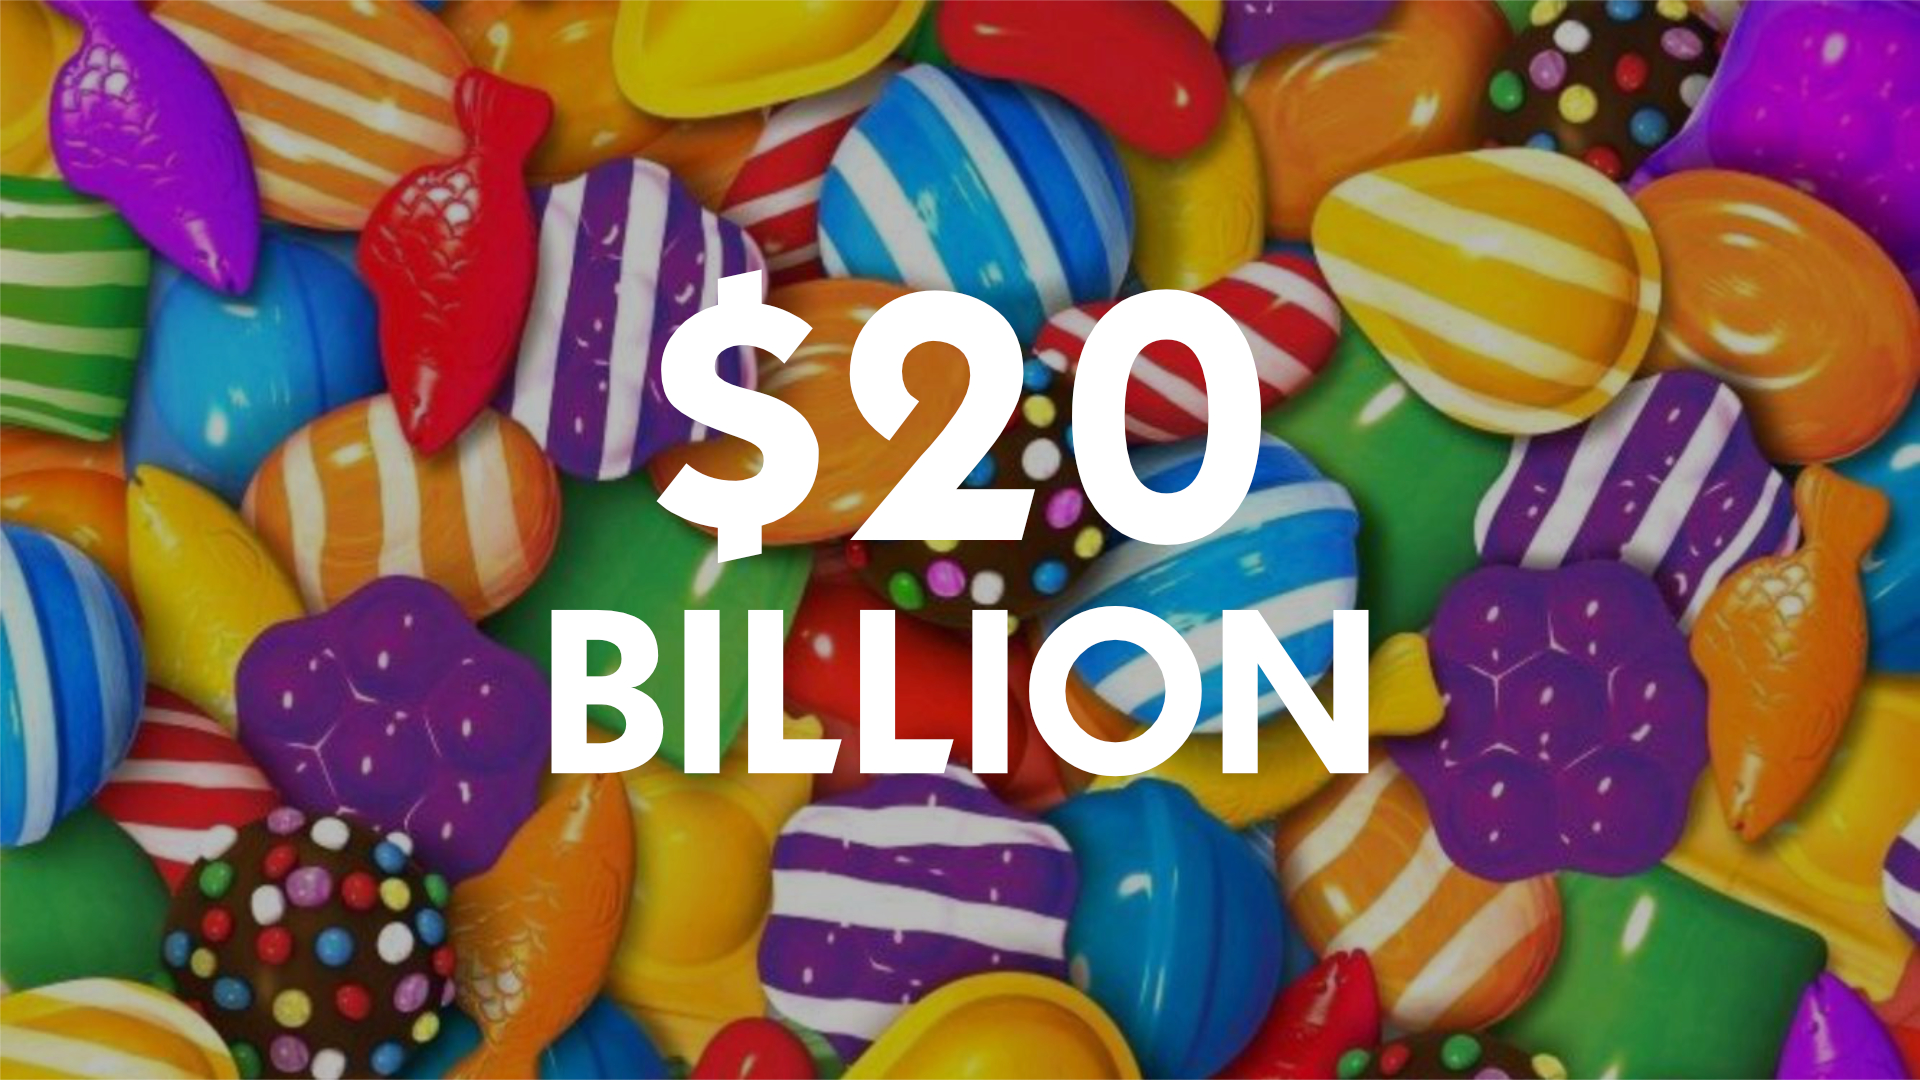 Candy Crush Saga surpasses $20 Billion in revenue